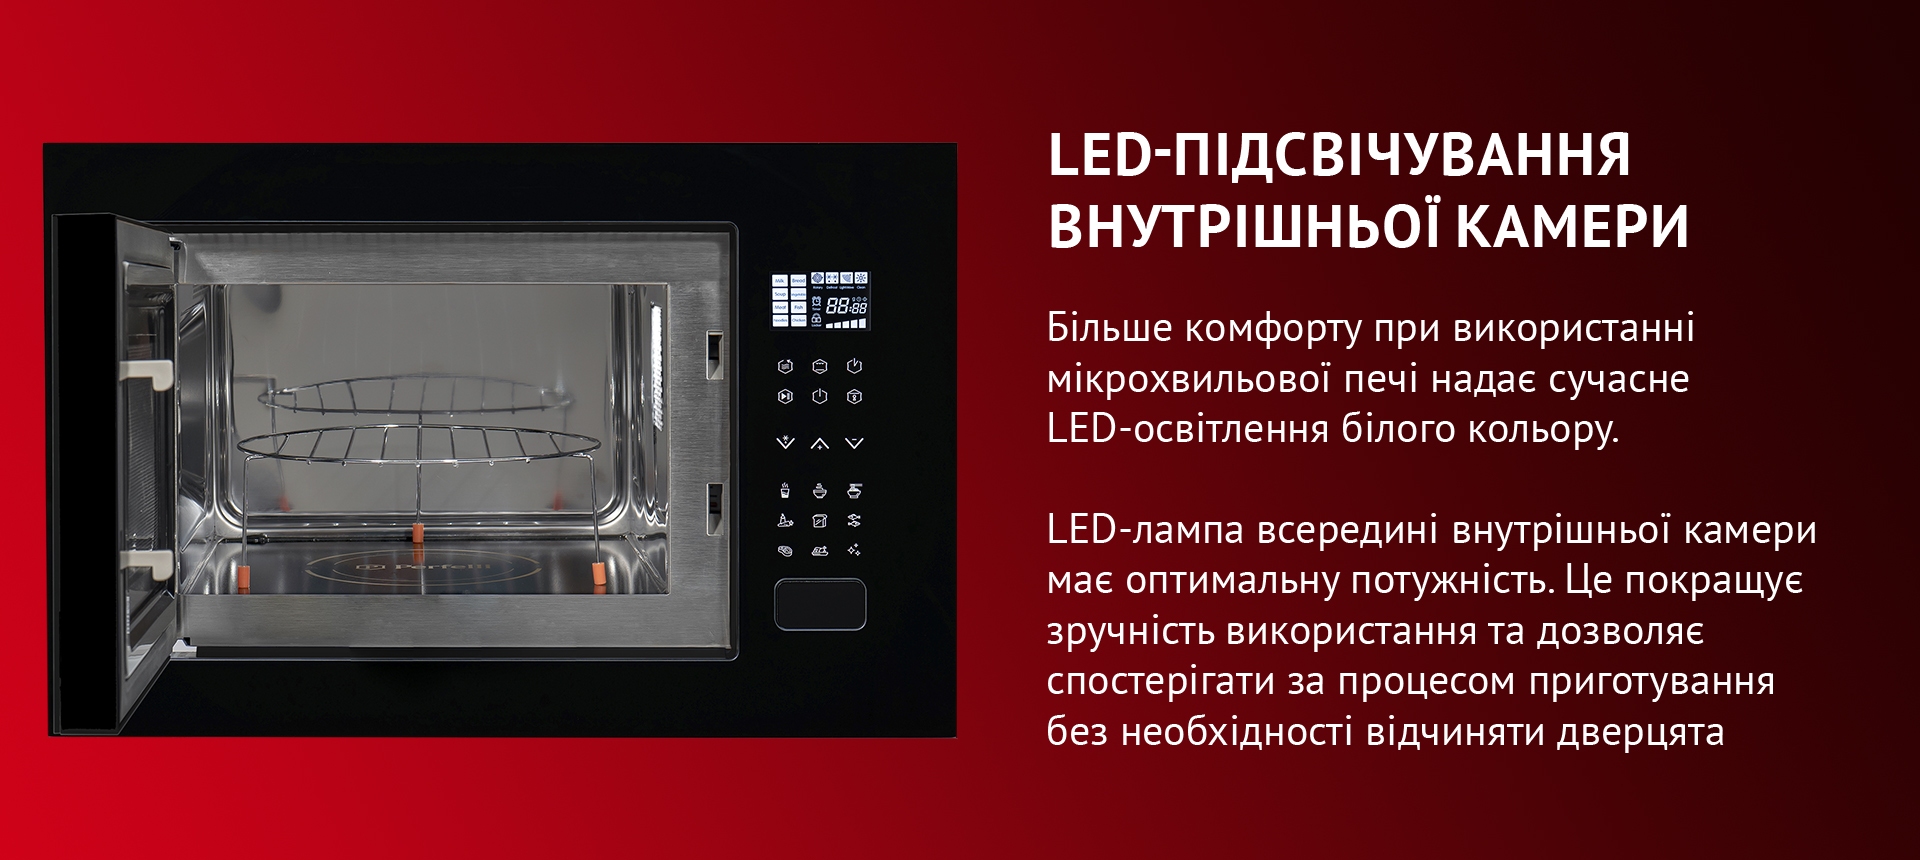 Максимального комфорту в використанні мікрохвильової печі надає сучасне LED-освітлення білого кольору. LED-лампа всередині внутрішньої камери має оптимальну потужність. Цього достатньо, щоб підсвічувати зону біокерамічної панелі